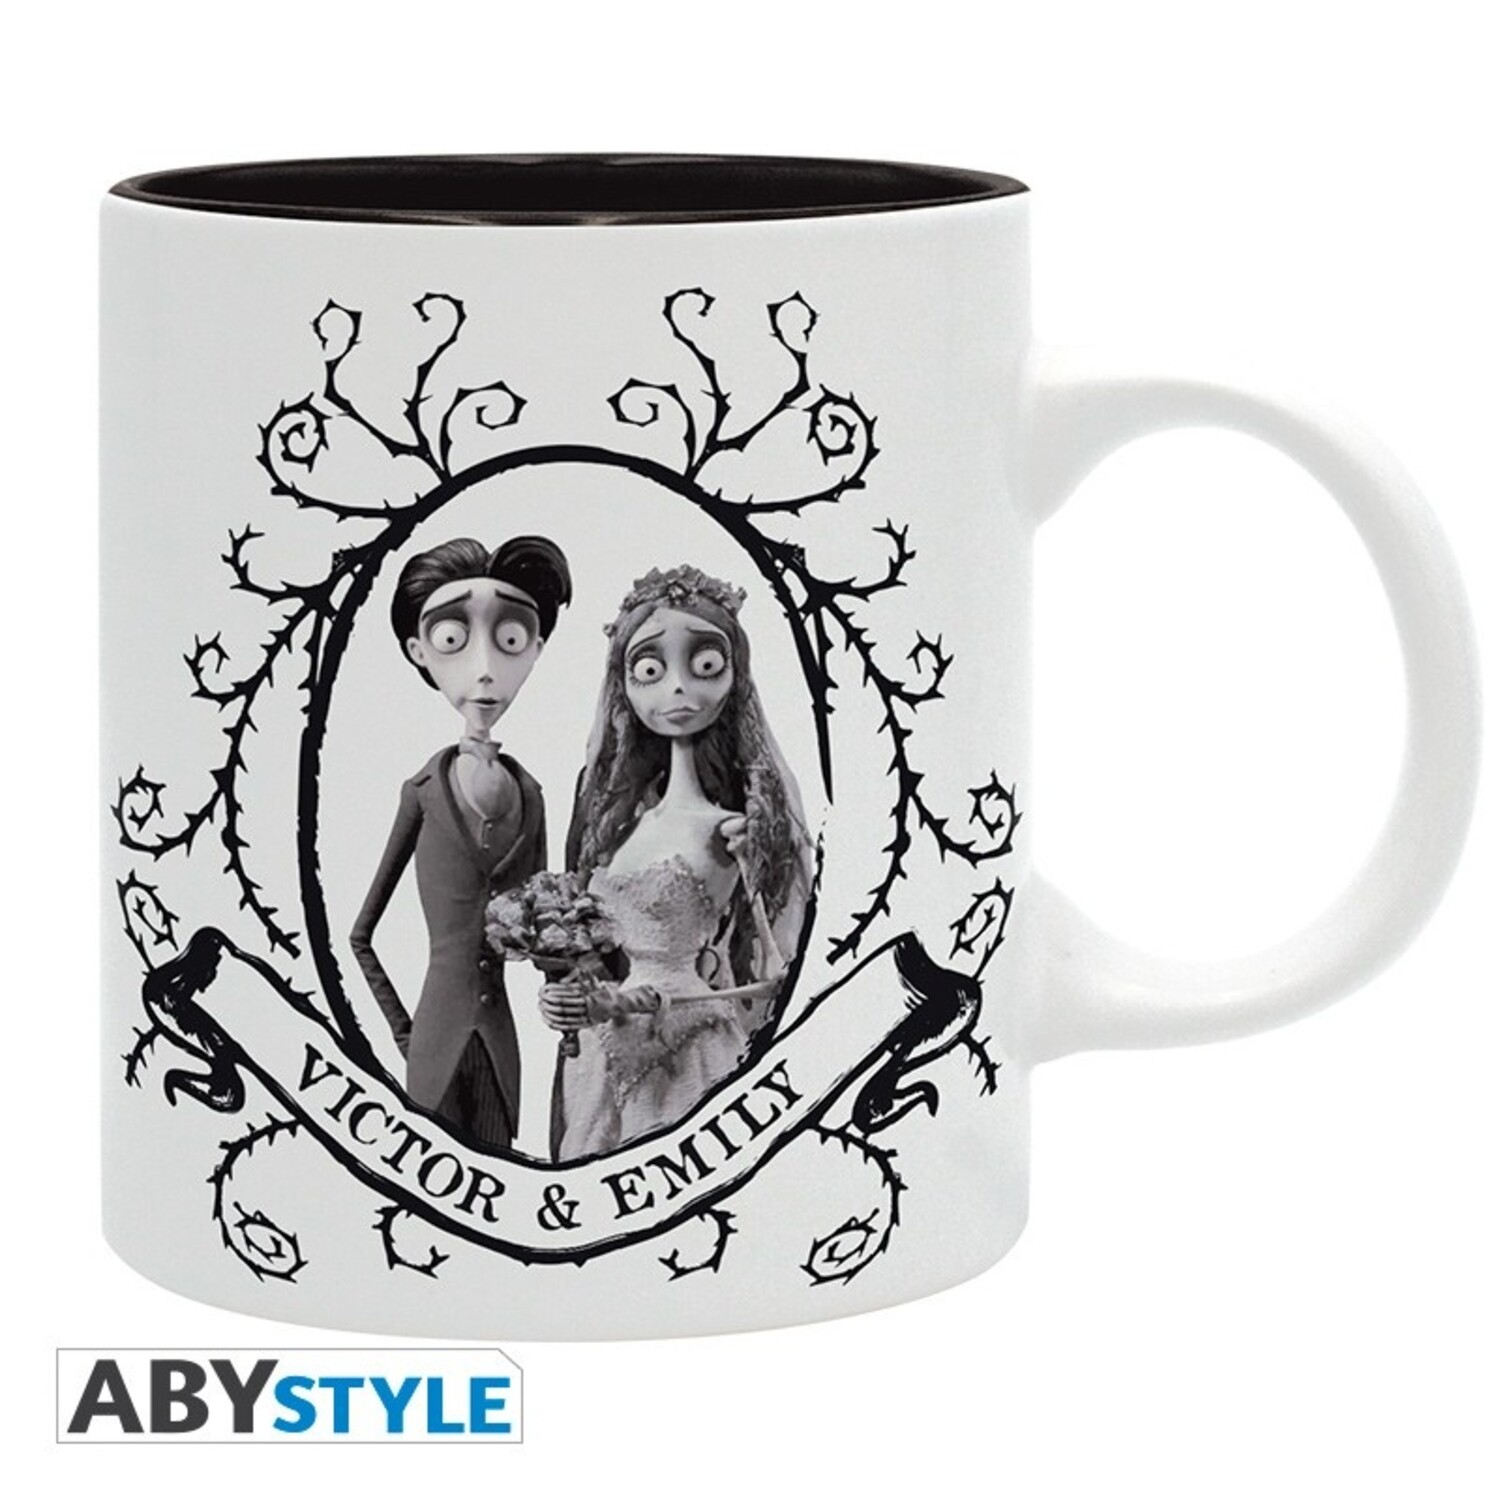 Princess bride - As You Wish - 10 oz. mug